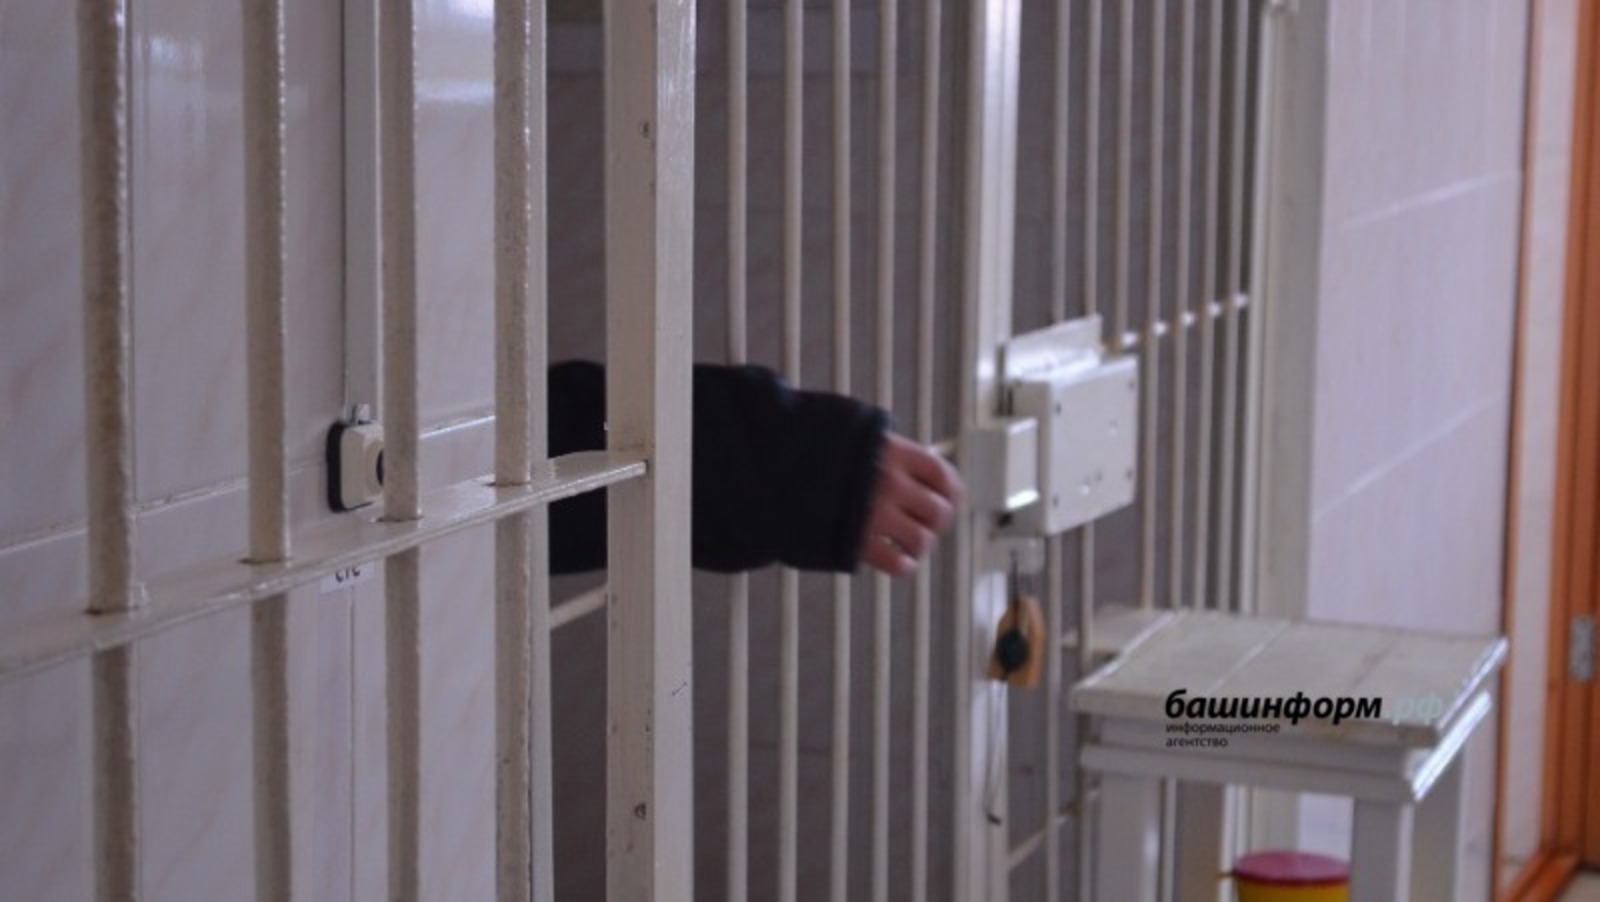 СРОЧНО: в пресс-службе УФСИН Башкирии прокомментировали ЧП о сбежавших из тюрьмы 30 осужденных